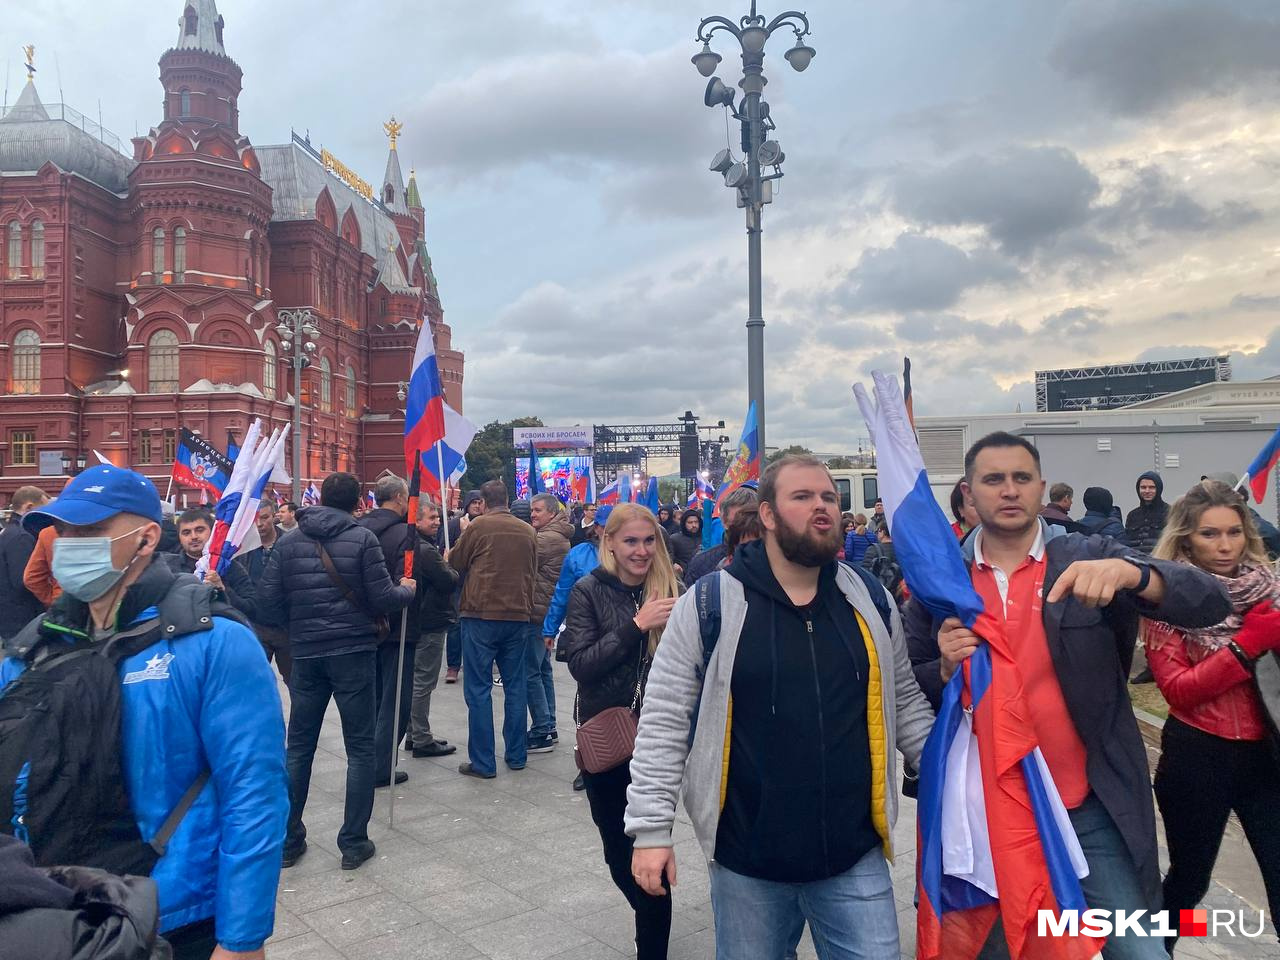 Митинг в москве человек. Митинг на Манежной. Митинг в центре Москвы. Фото людей в Москве. Митинги в Москве сейчас.